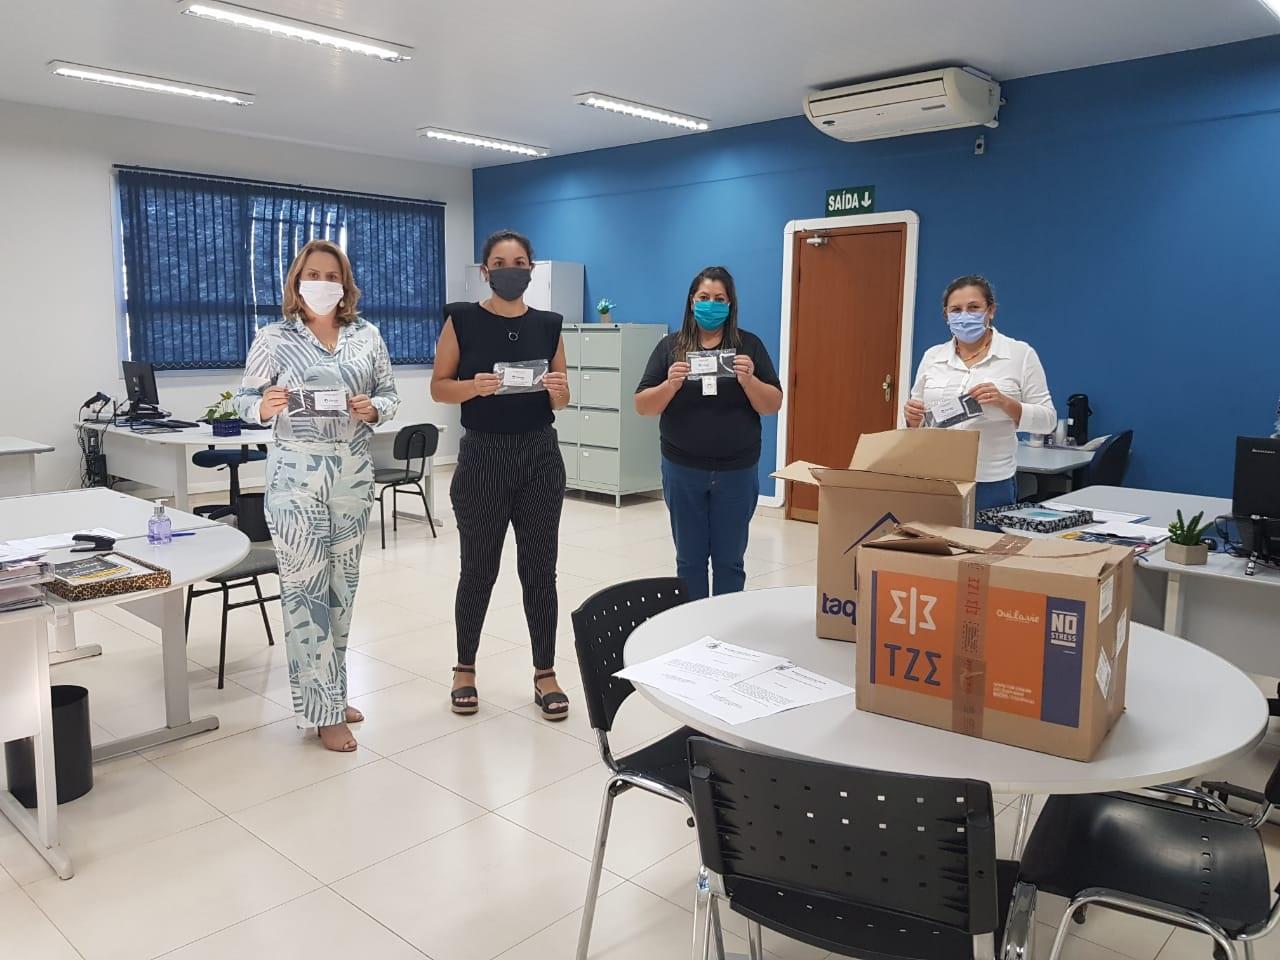 Assistência Social distribuiu máscaras para indústrias de Aparecida do Taboado